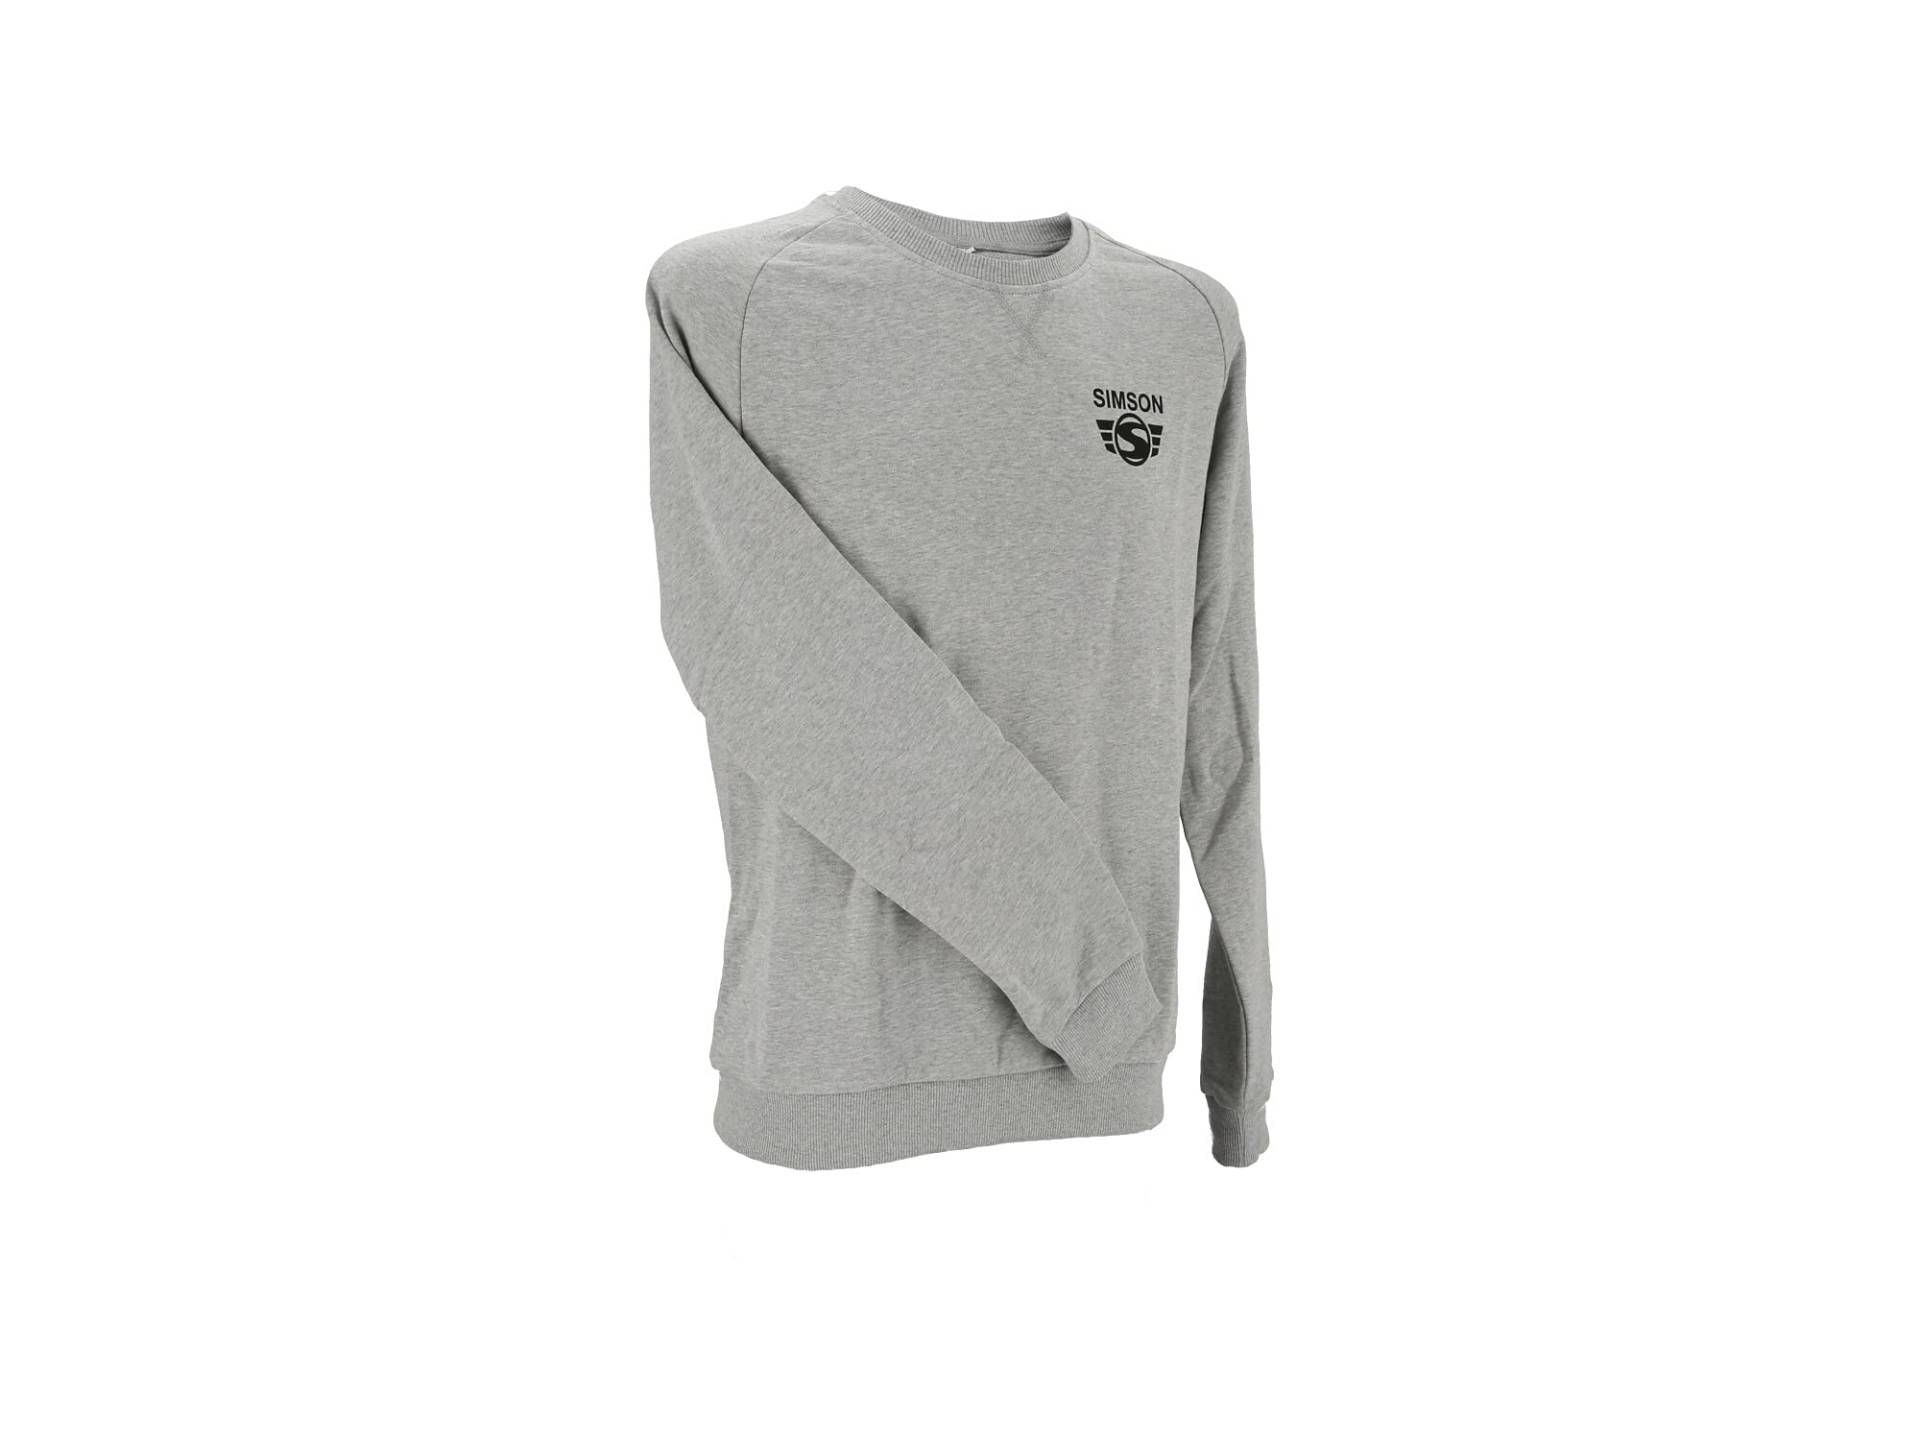 Simson Sweatshirt, Pullover grau meliert mit Logo Print, 100% Baumwolle, original MZA Fan-Artikel, Größen: XS bis XXXL, Größe:M von MZA